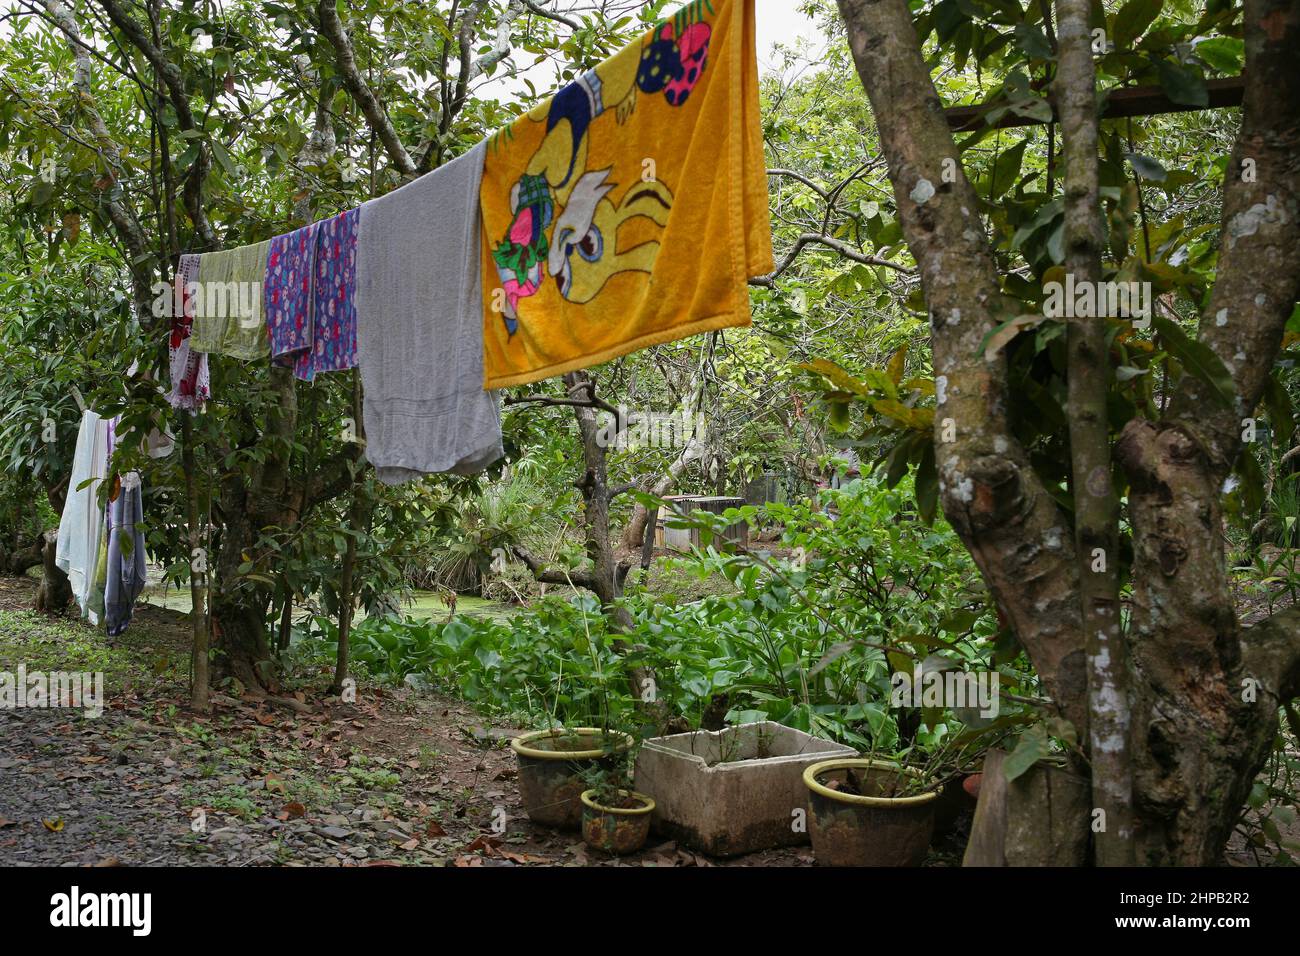 Washing drying in a garden, Tân Thạch, Châu Thành, Bến Tre, Vietnam Stock Photo